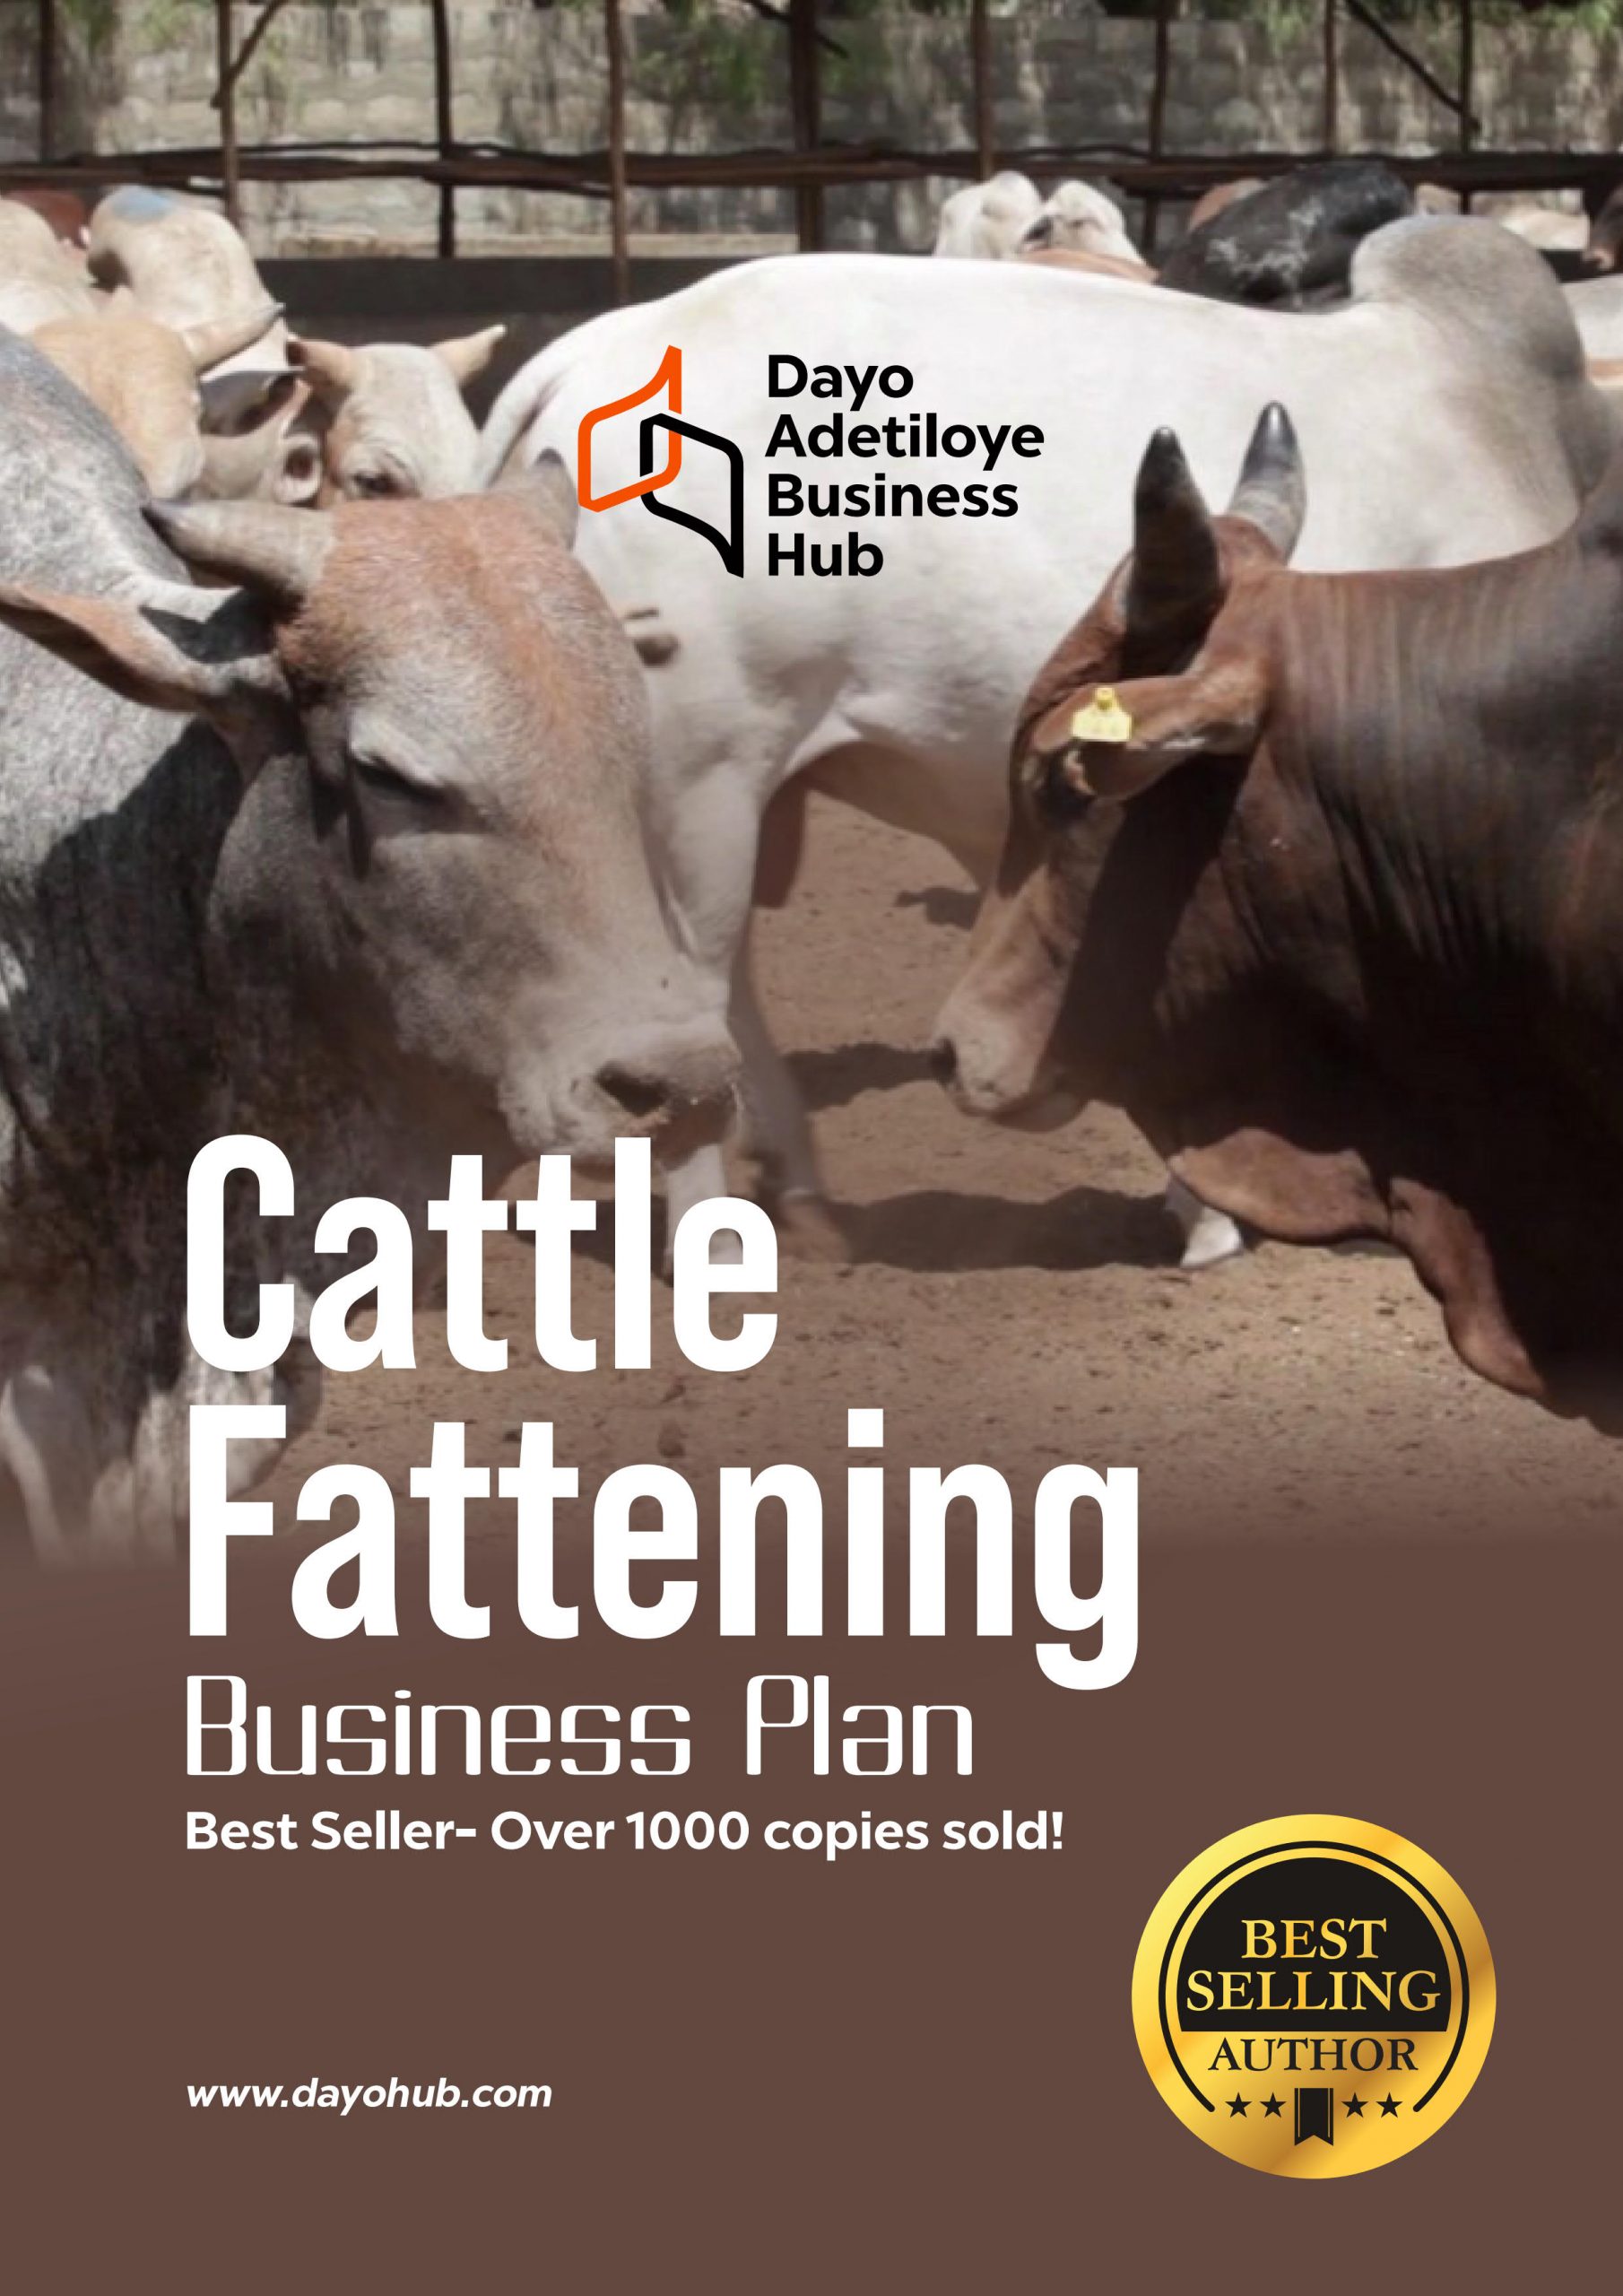 business plan on cattle fattening